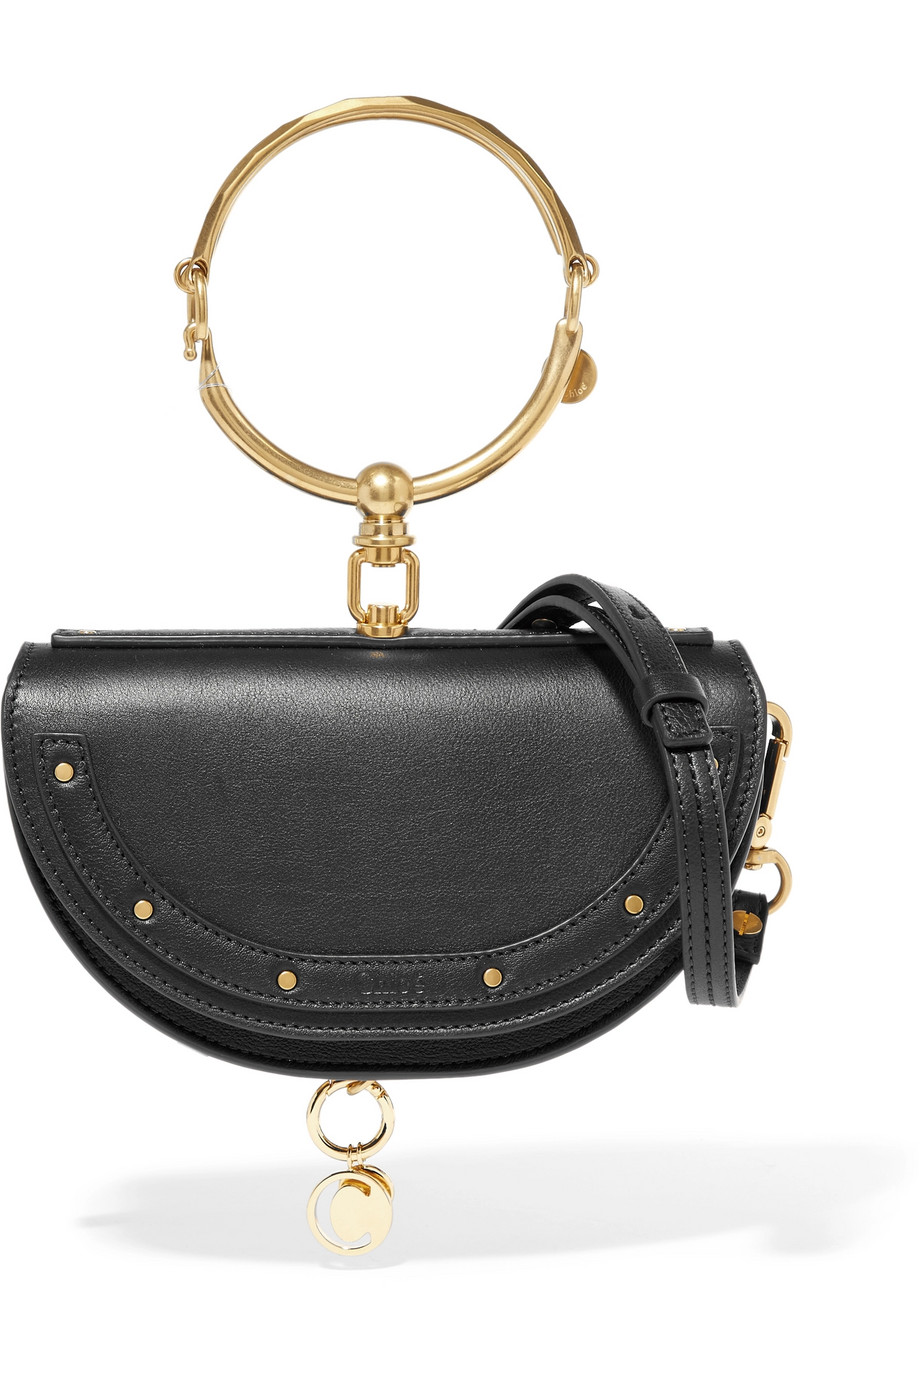 Chloé Nile Bracelet Mini Bag in Black — UFO No More